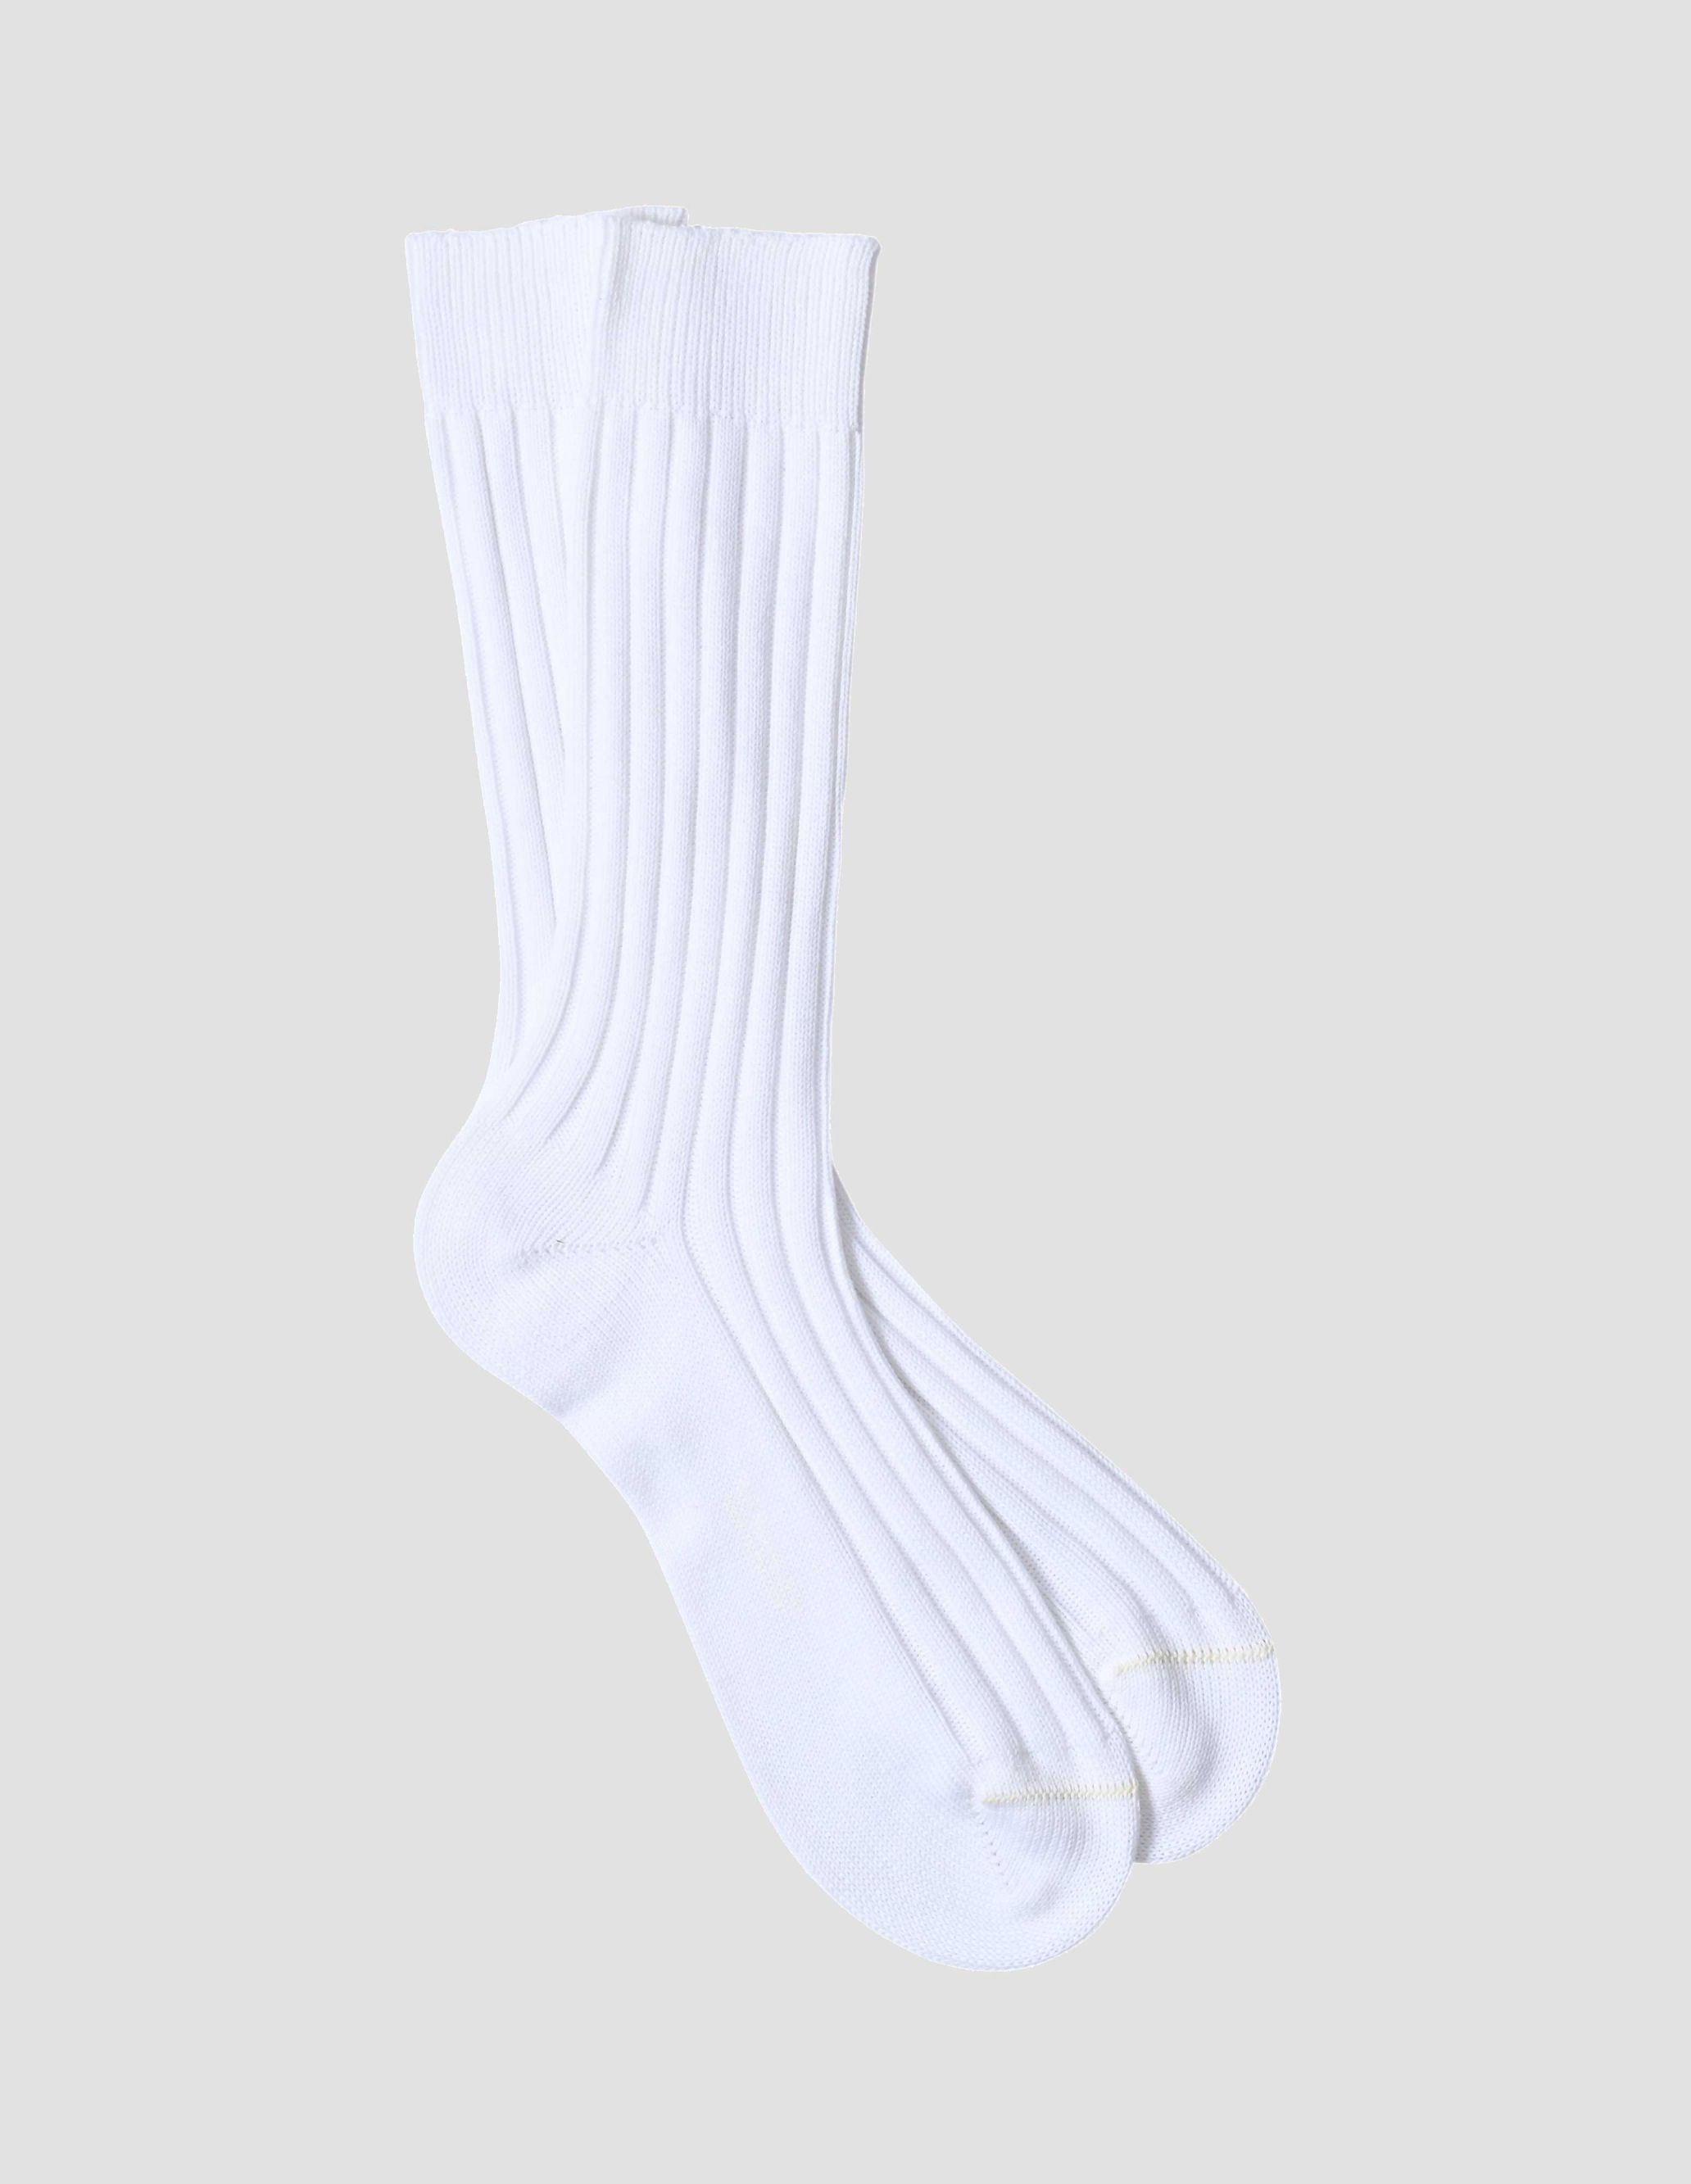 Lot de 3 paires de chaussettes homme Punto Blanco en coton sport rayées -  bord côtelé. Fabriquées en Espagne. · Mode homme · El Corte Inglés